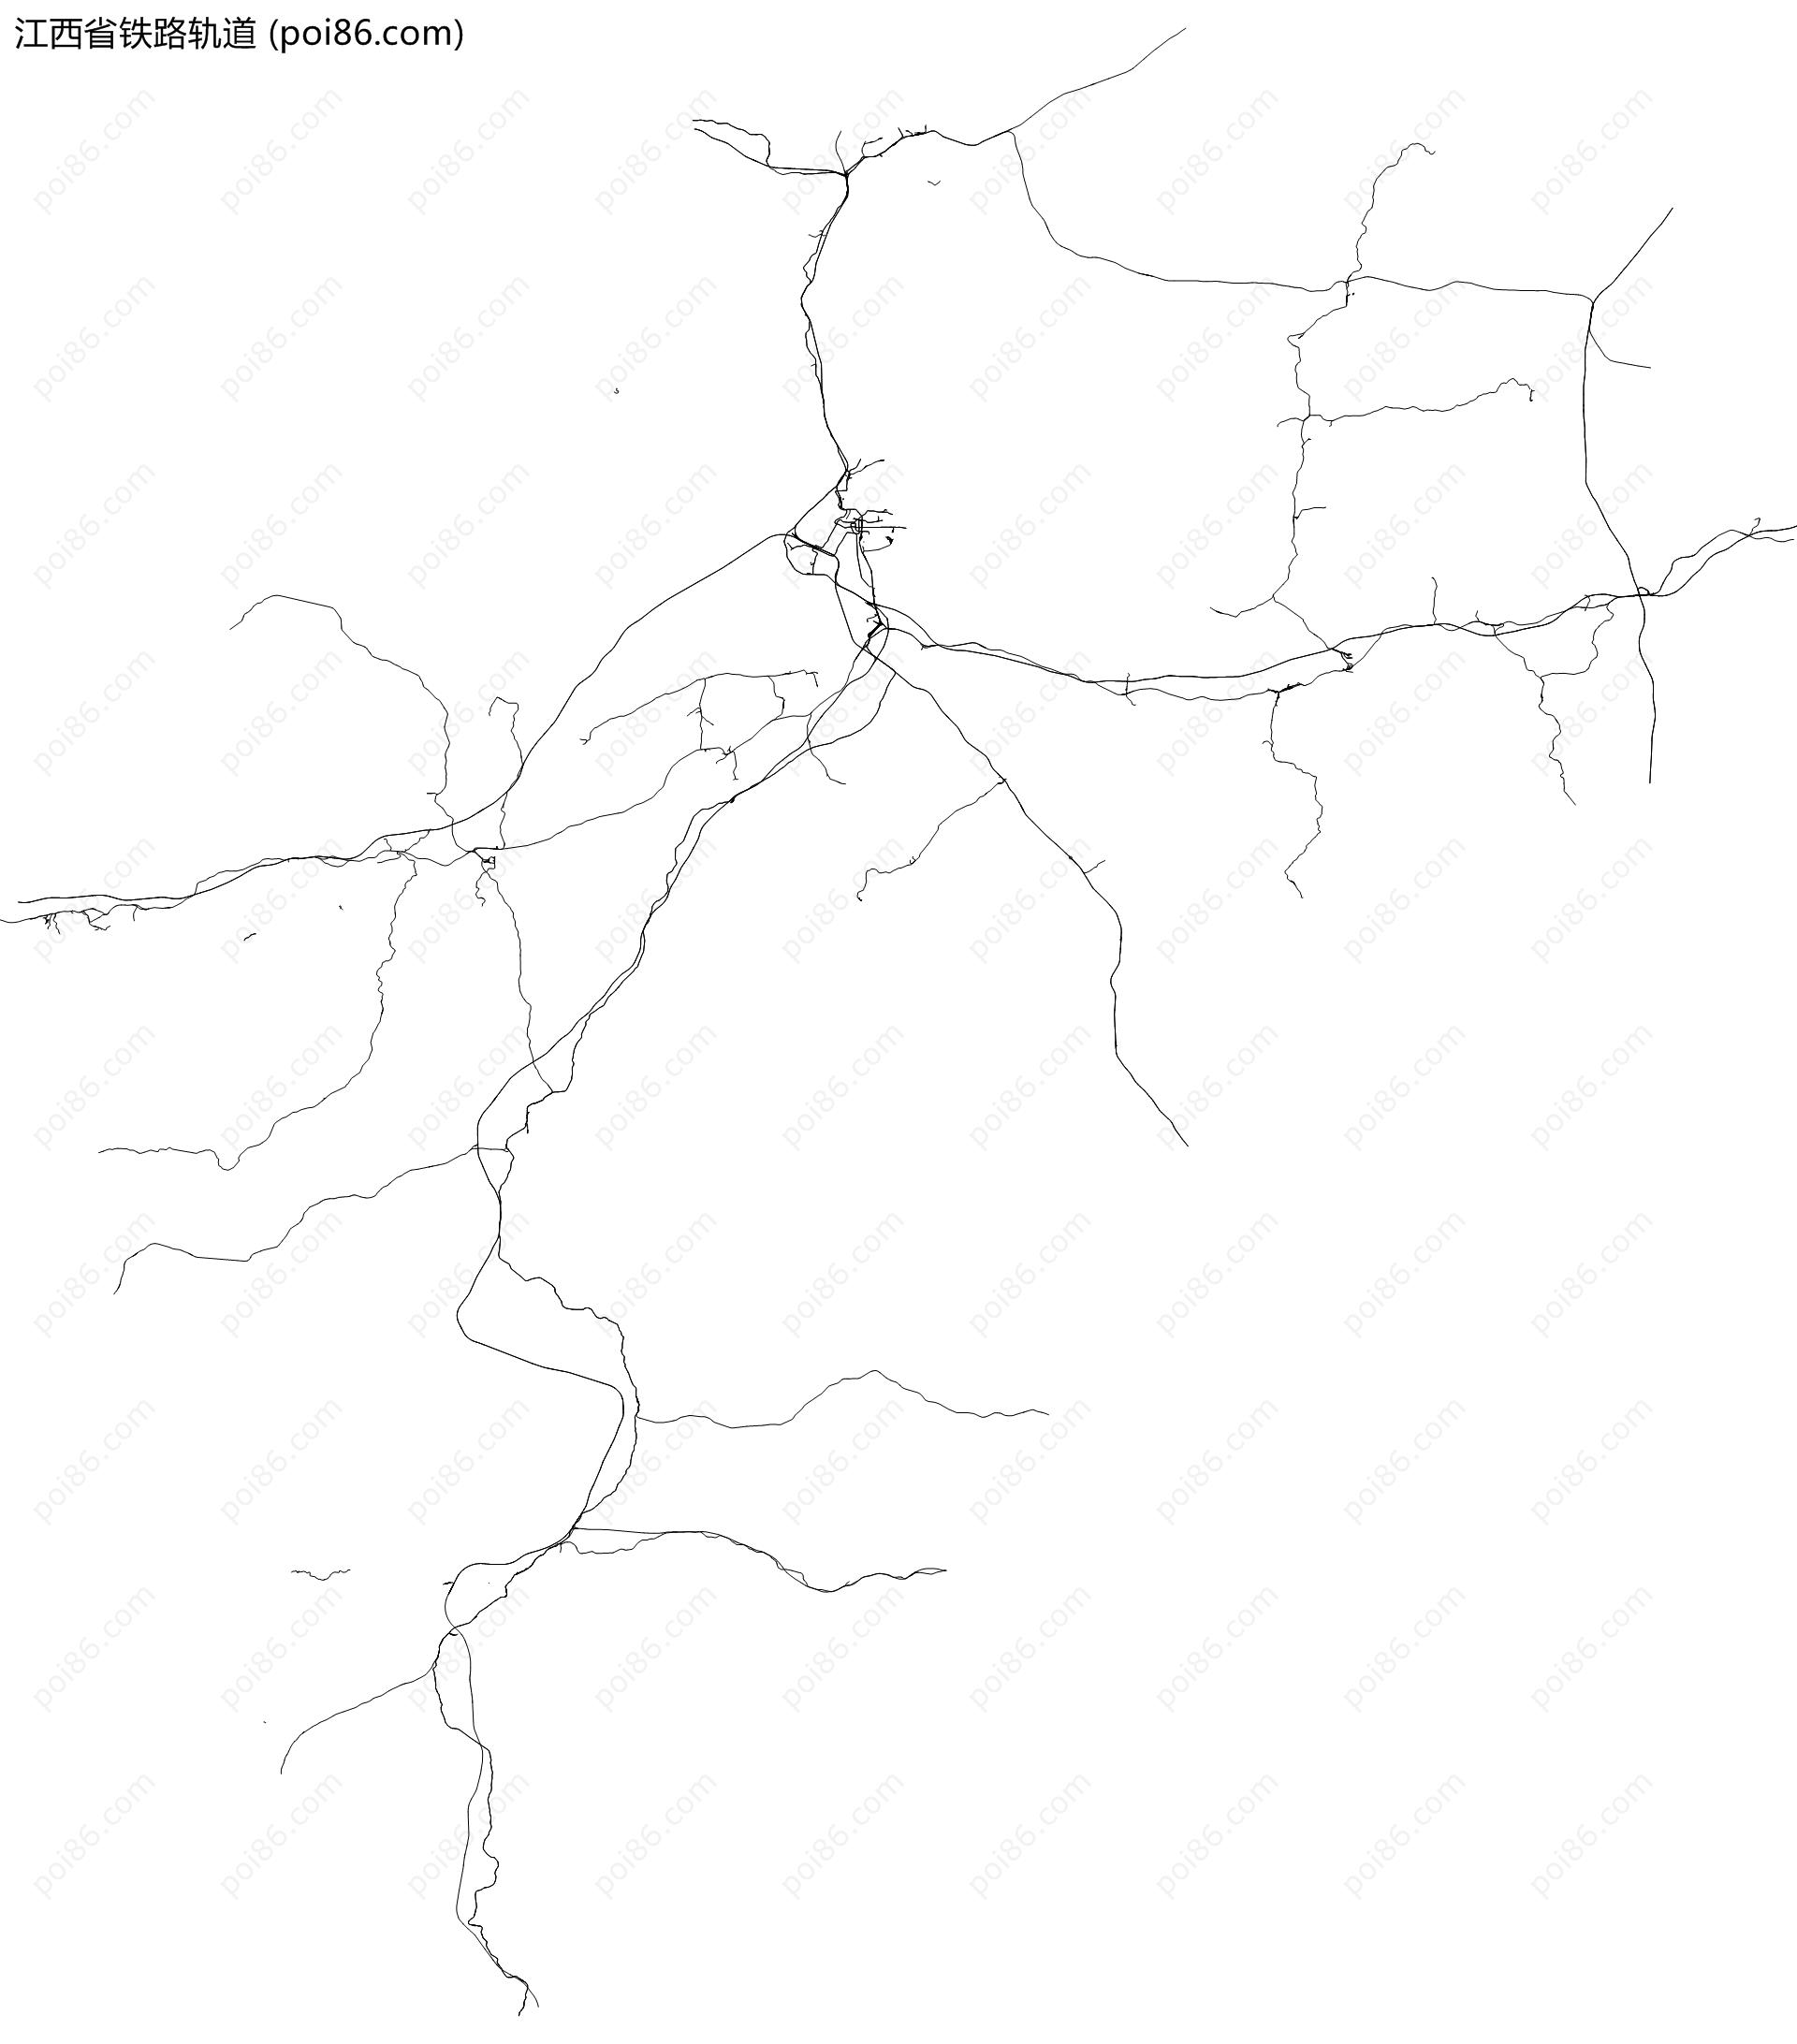 江西省铁路轨道地图